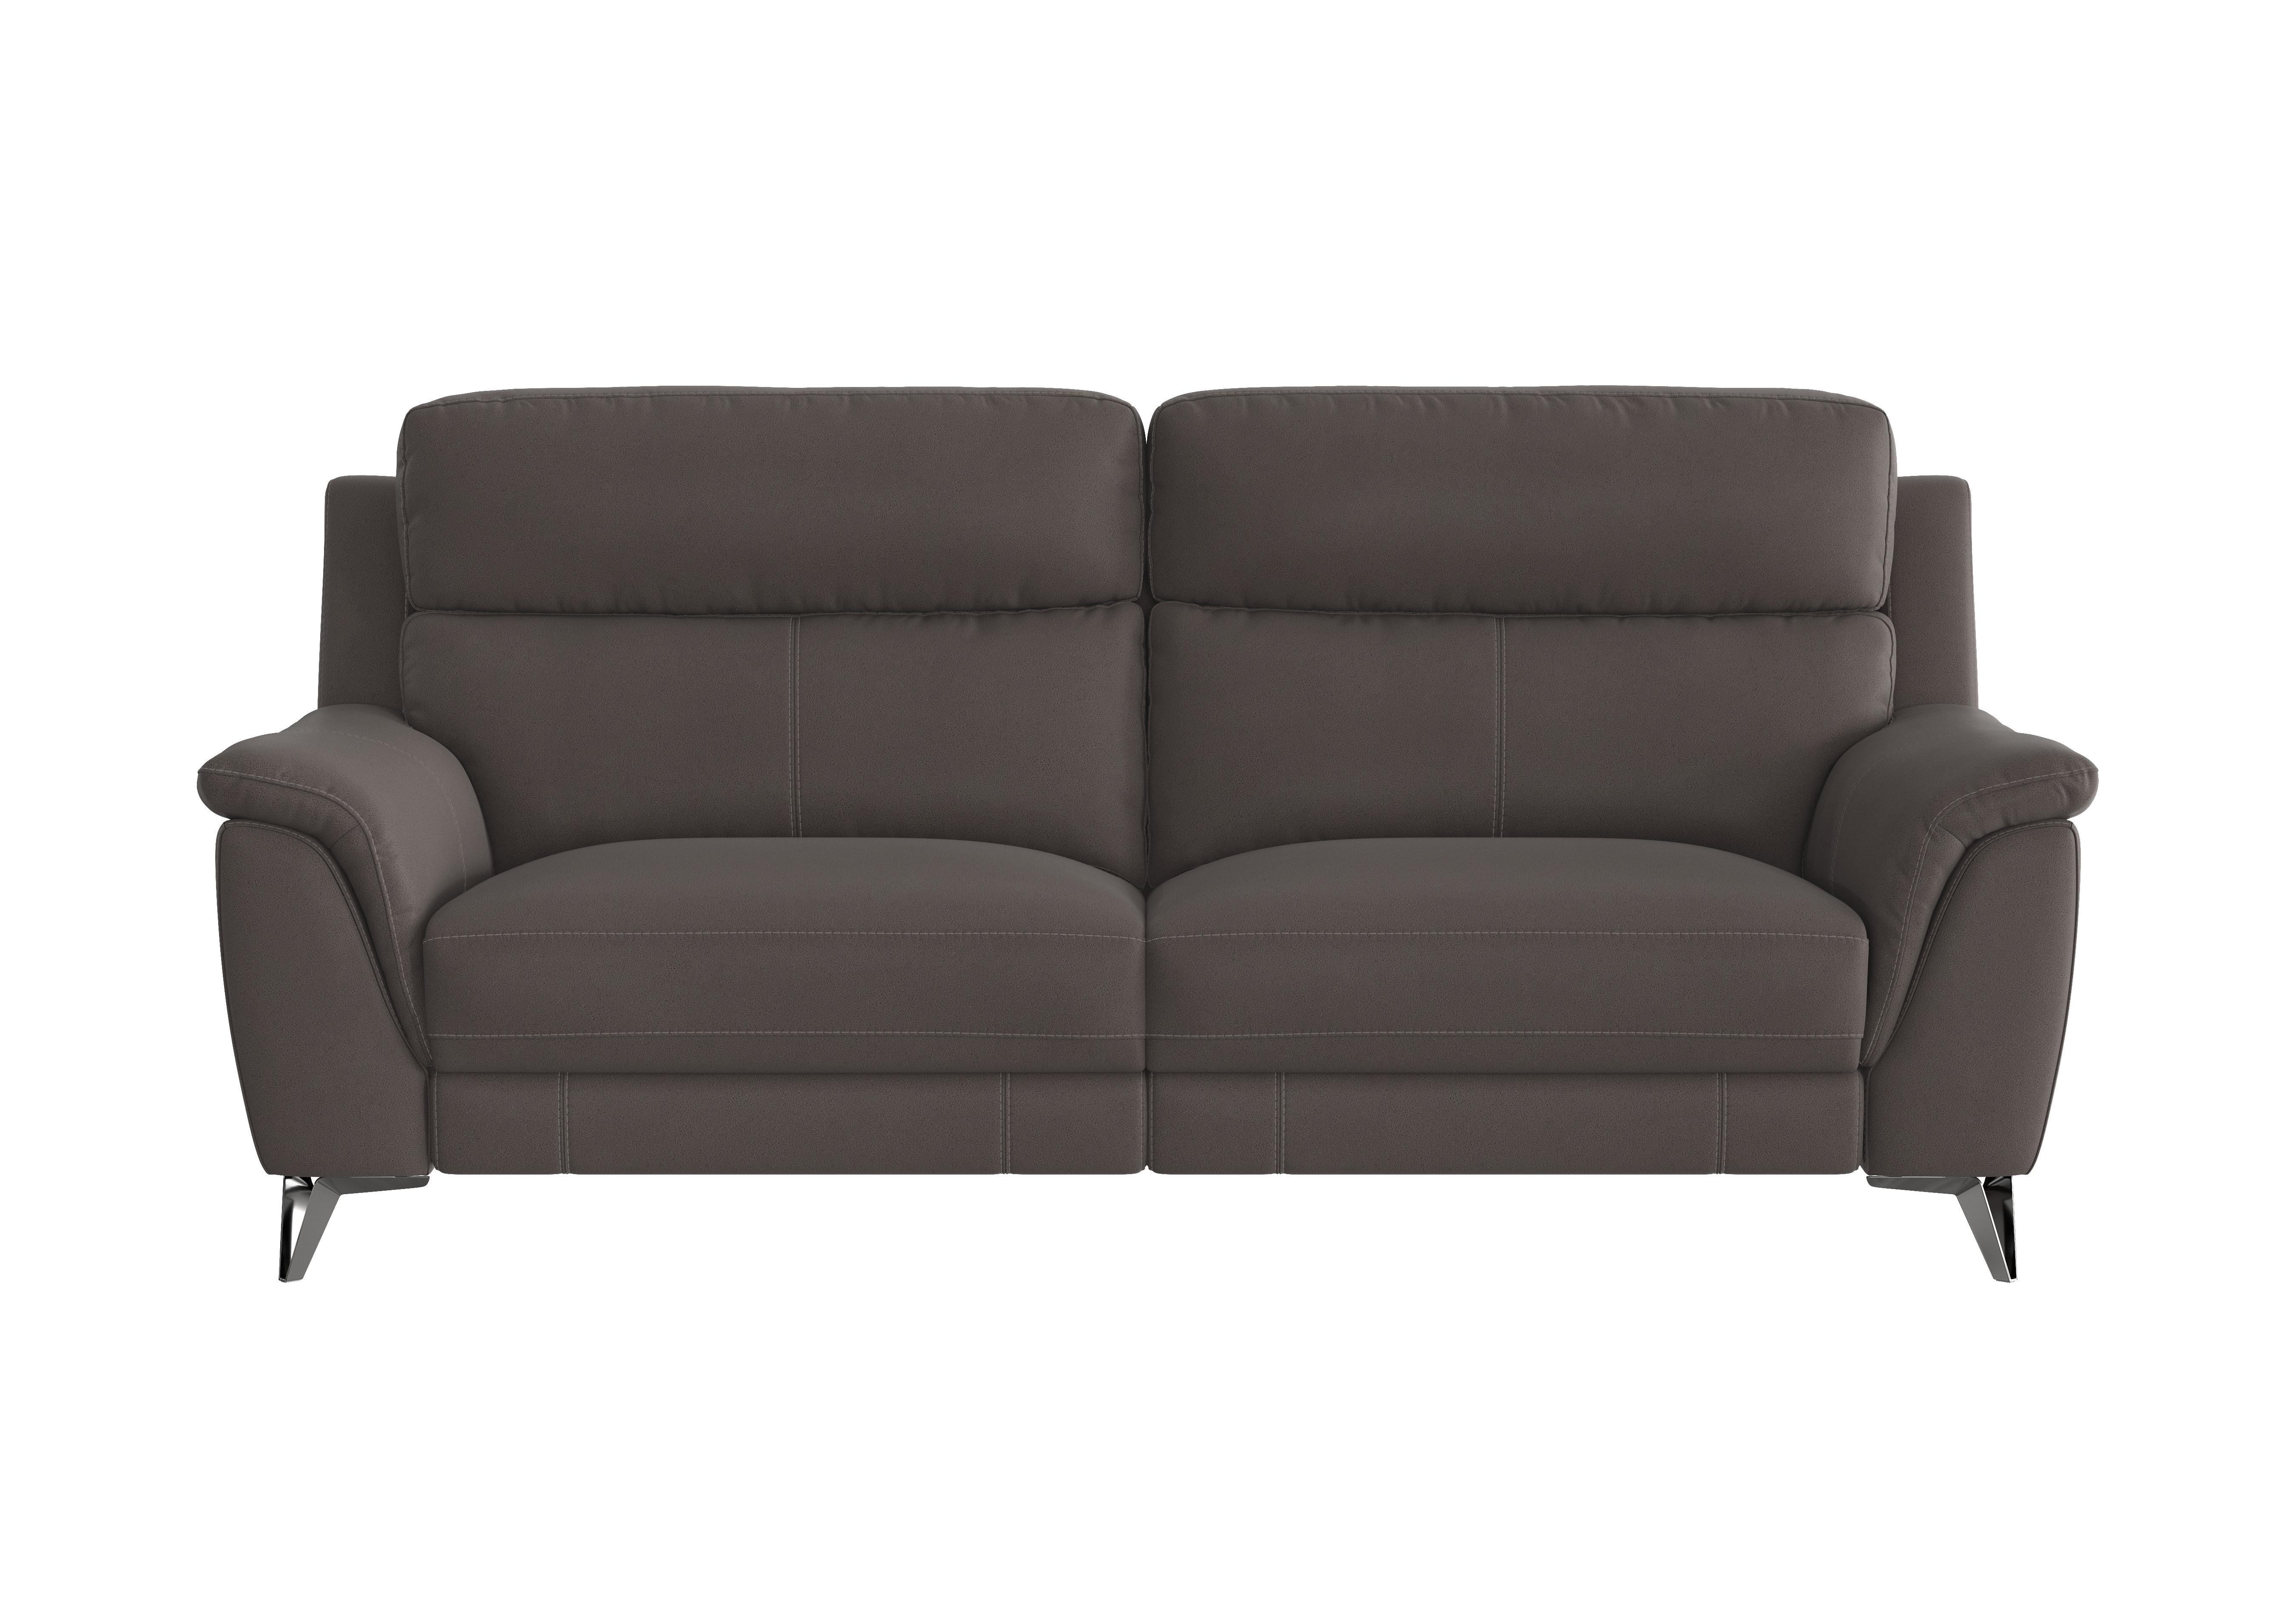 Contempo 3 Seater Fabric Sofa in Bfa-Blj-R16 Grey on Furniture Village